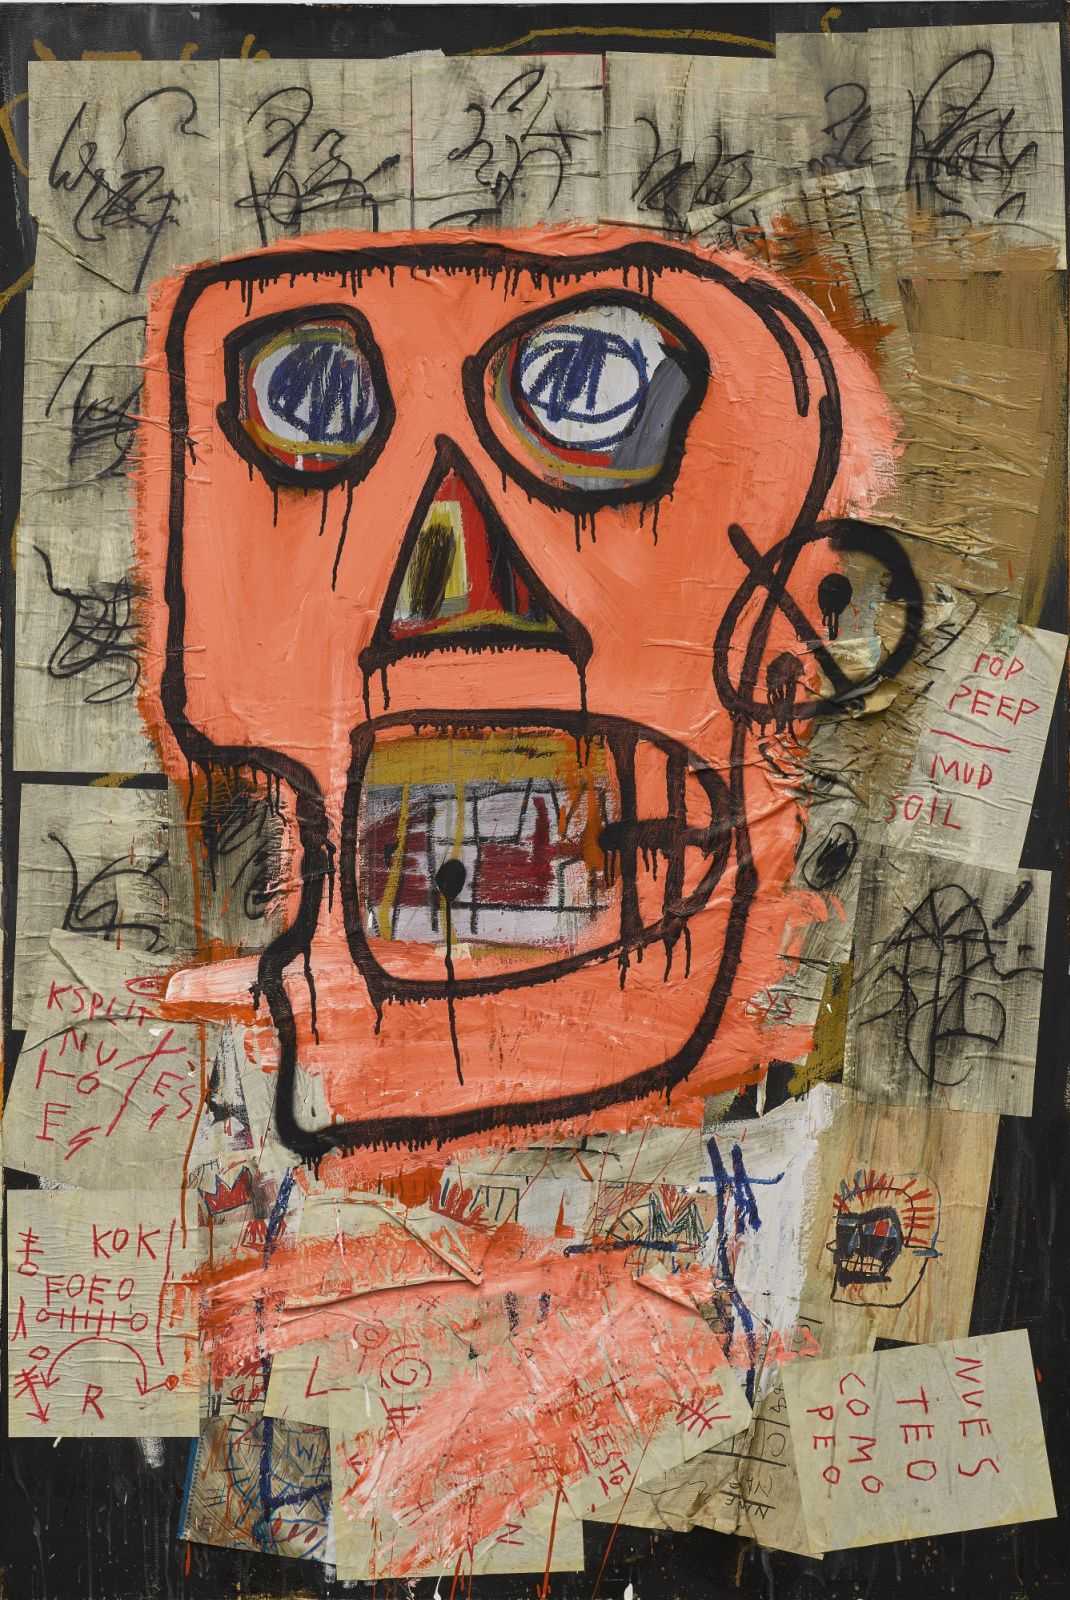 Жан-мишель баския (jean-michel basquiat) – биография, картины художника